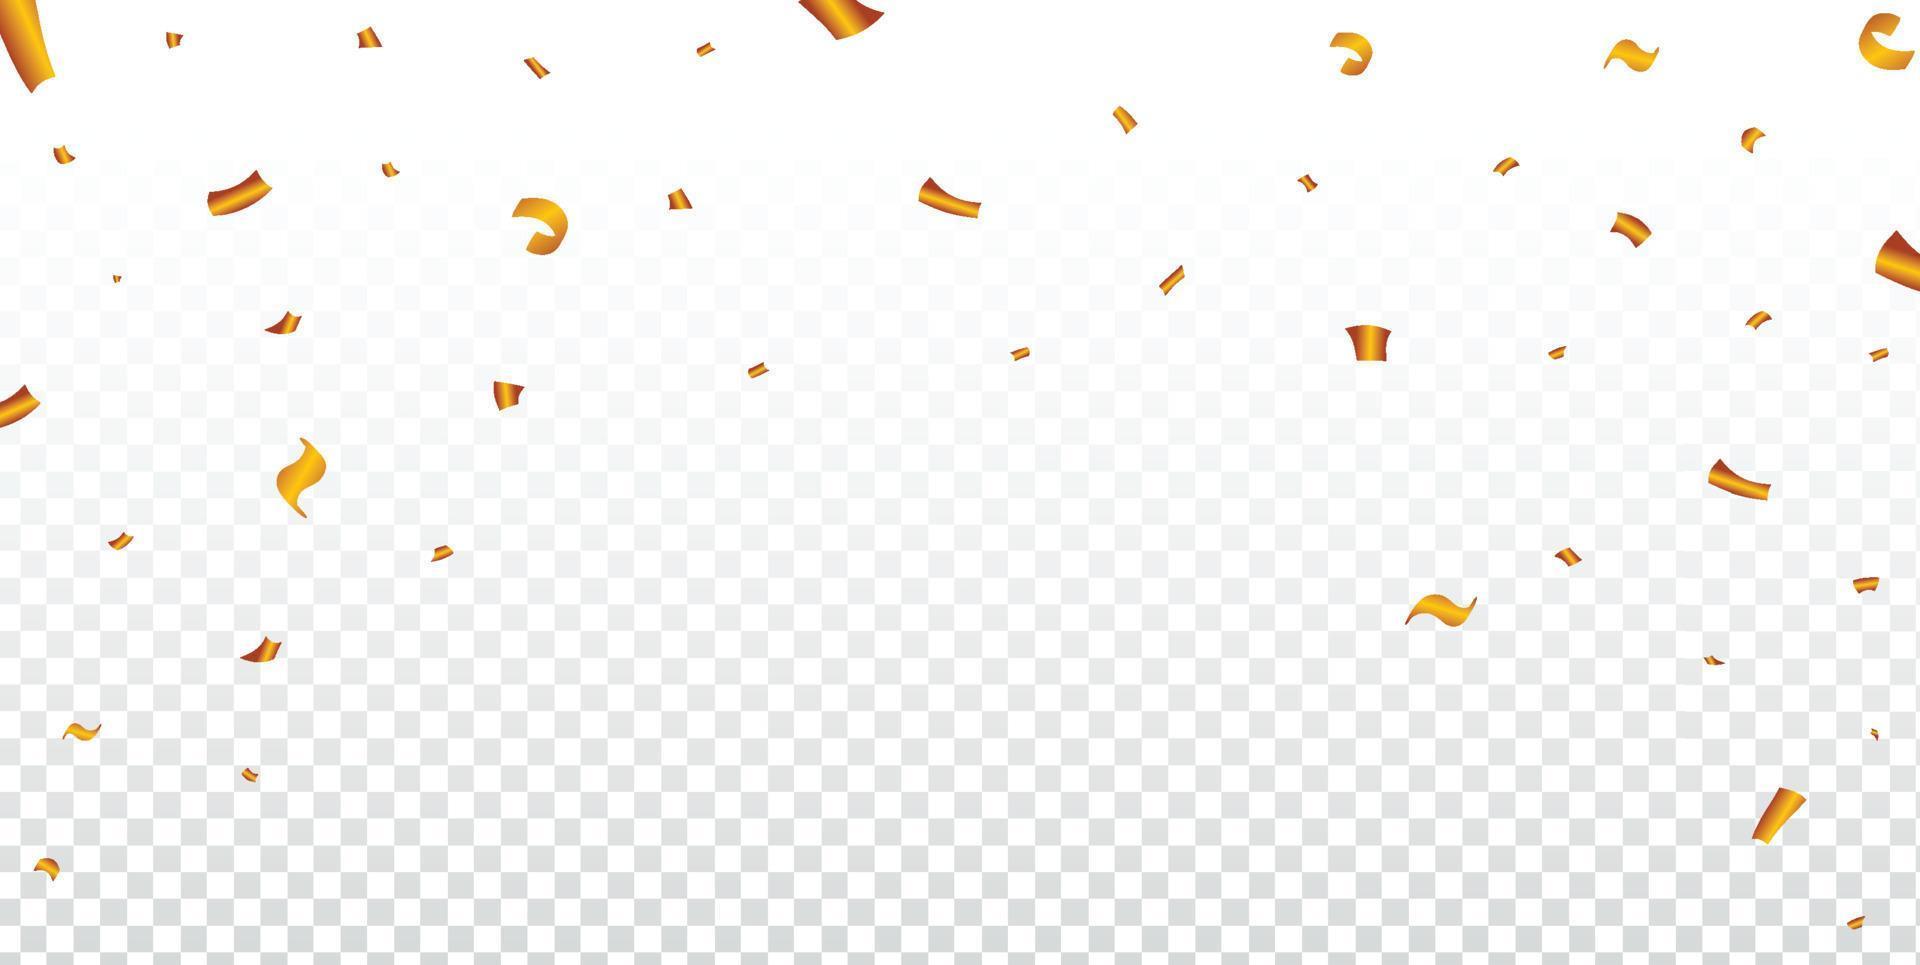 Goldener Party-Lametta-Rahmen für einen Karnevalshintergrund. fallende illustration des goldenen konfettis auf einem transparenten hintergrund. Elemente der Geburtstagsfeier. festival- und partyelement-konfettiillustration. vektor